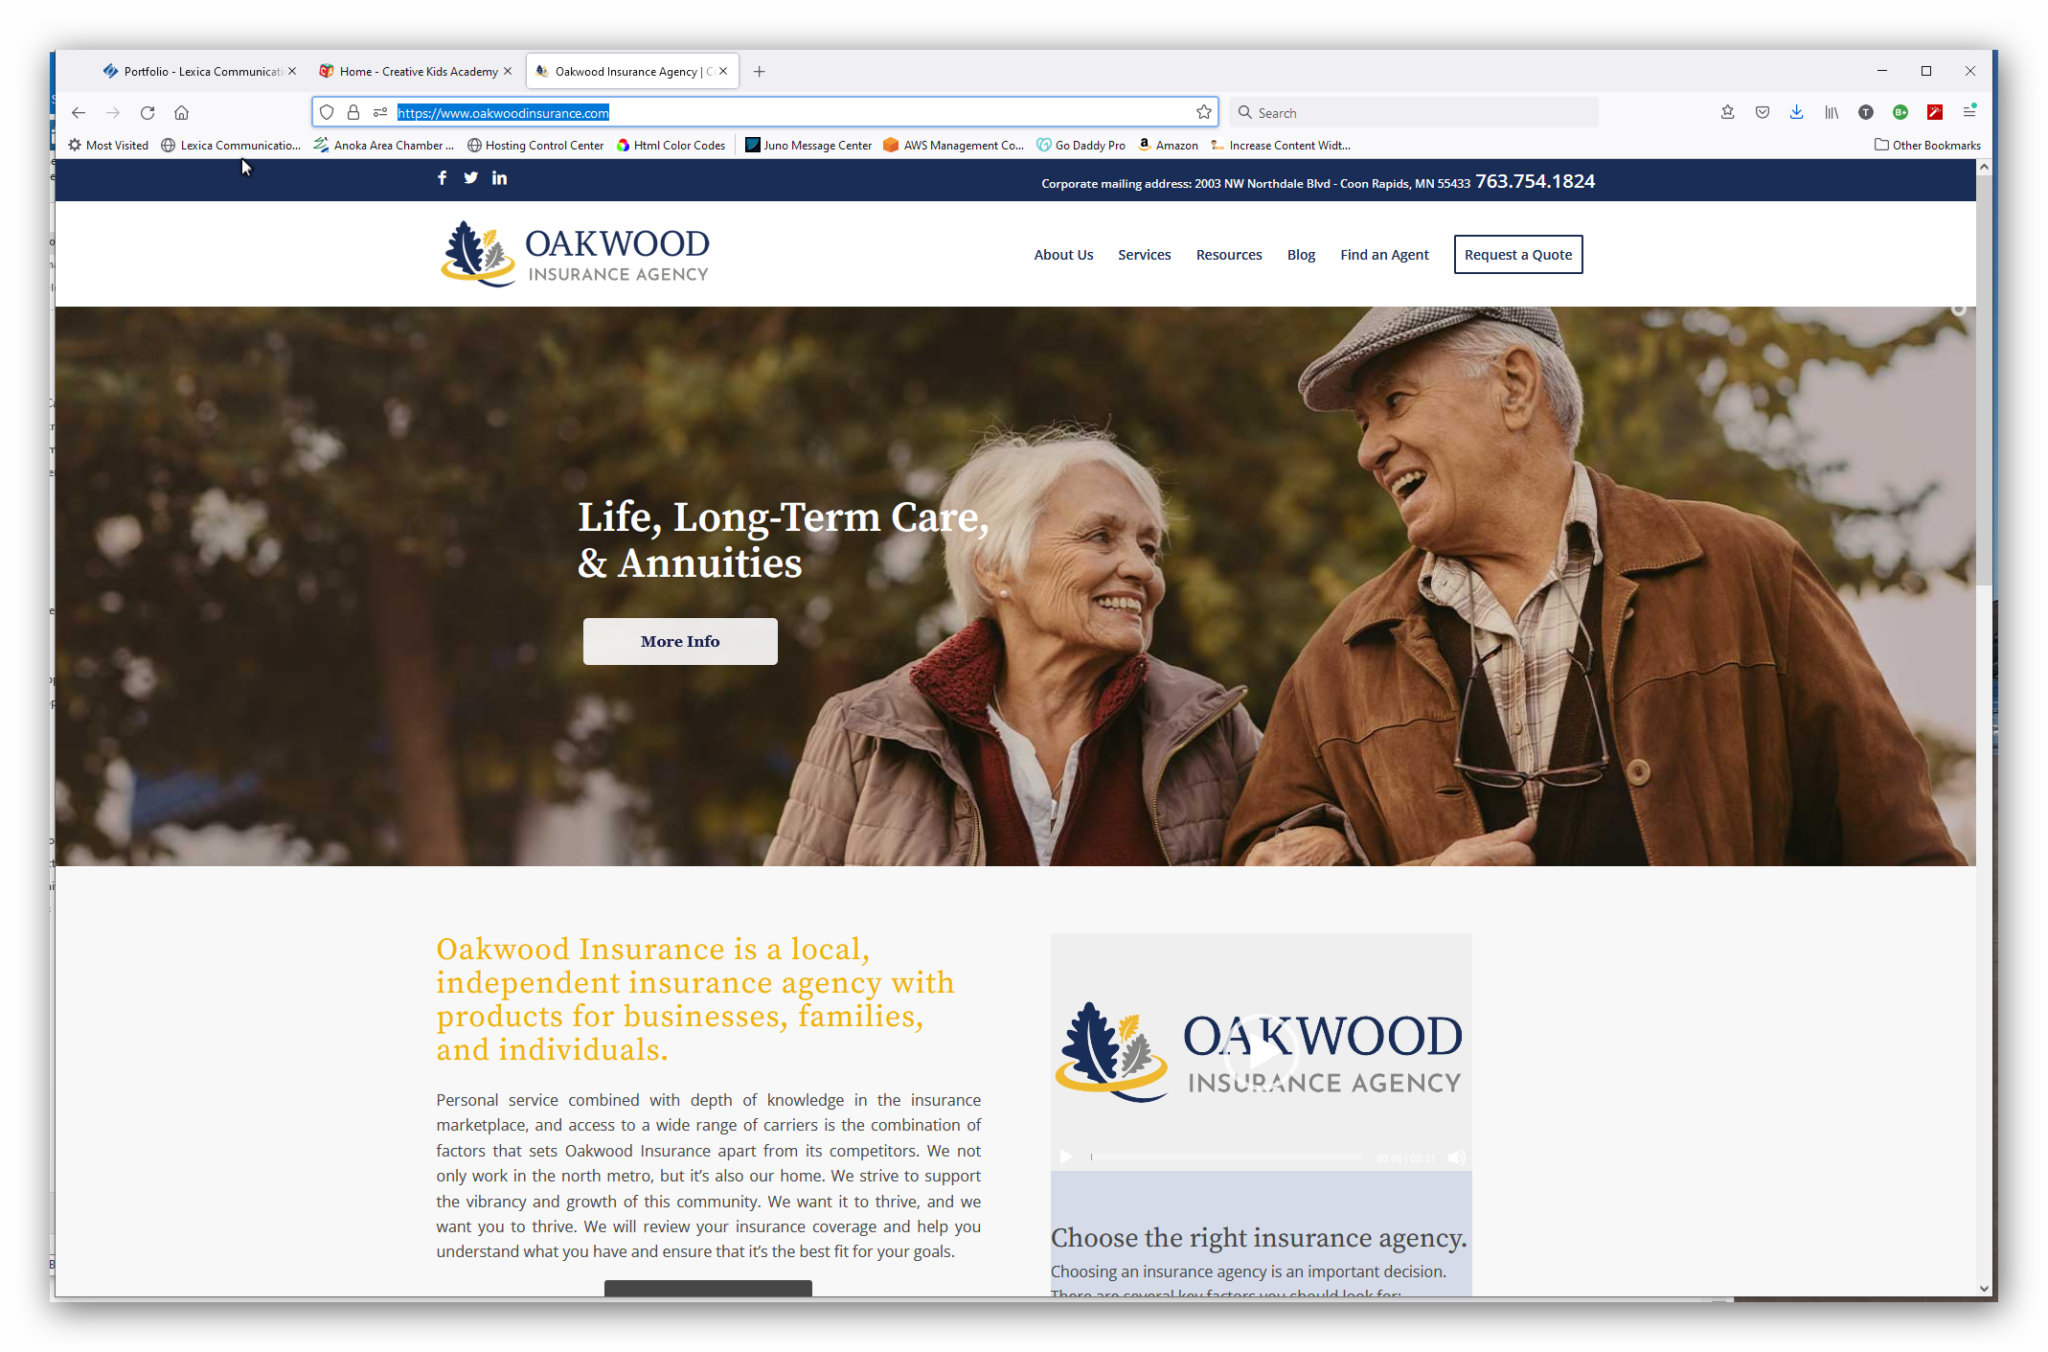 oakwood-insurance-company-lexica-communications-inc